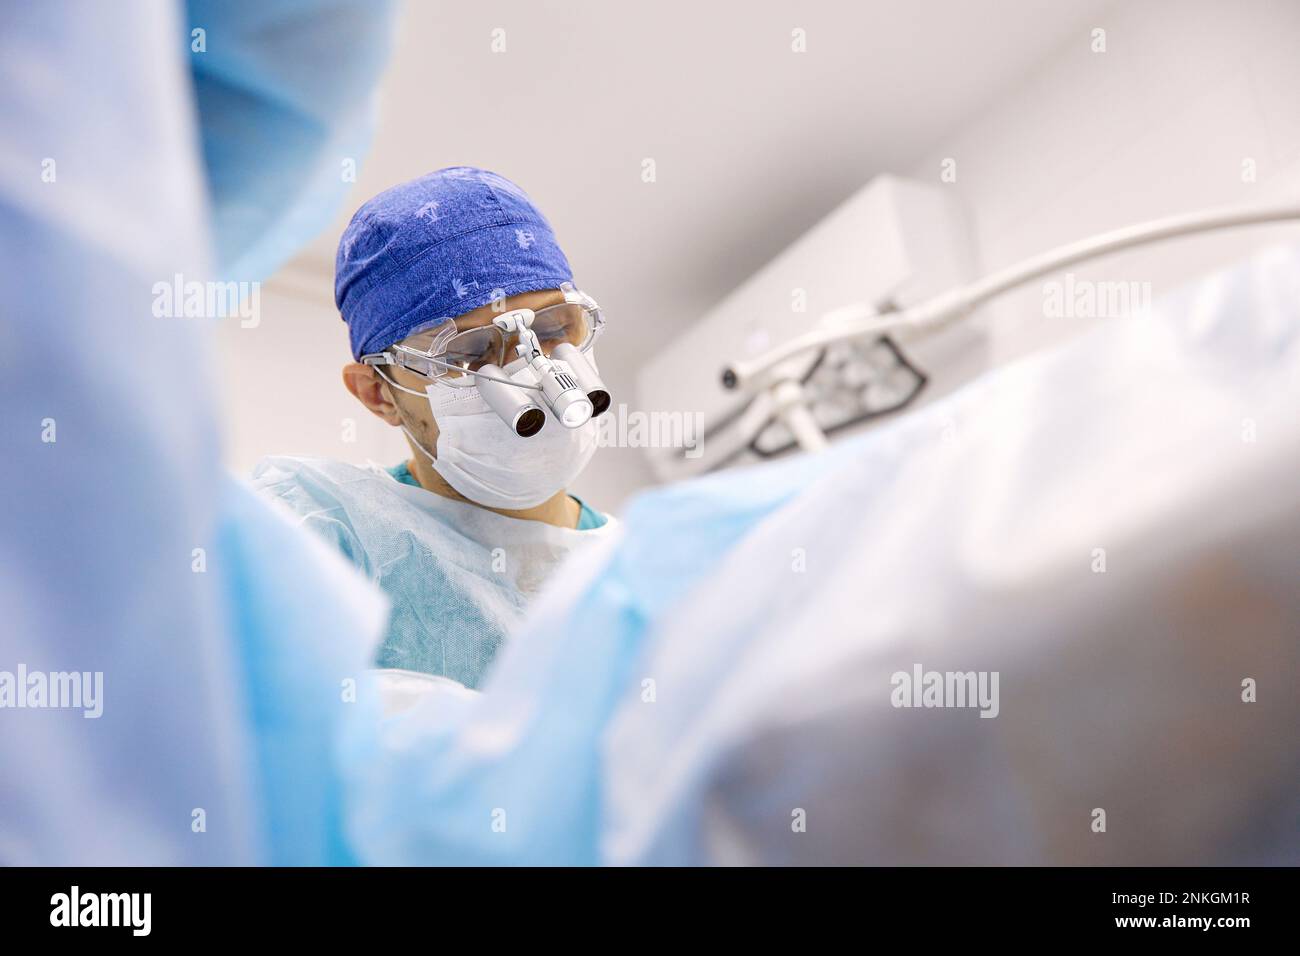 Medico che esegue un intervento chirurgico agli occhi sul paziente Foto Stock